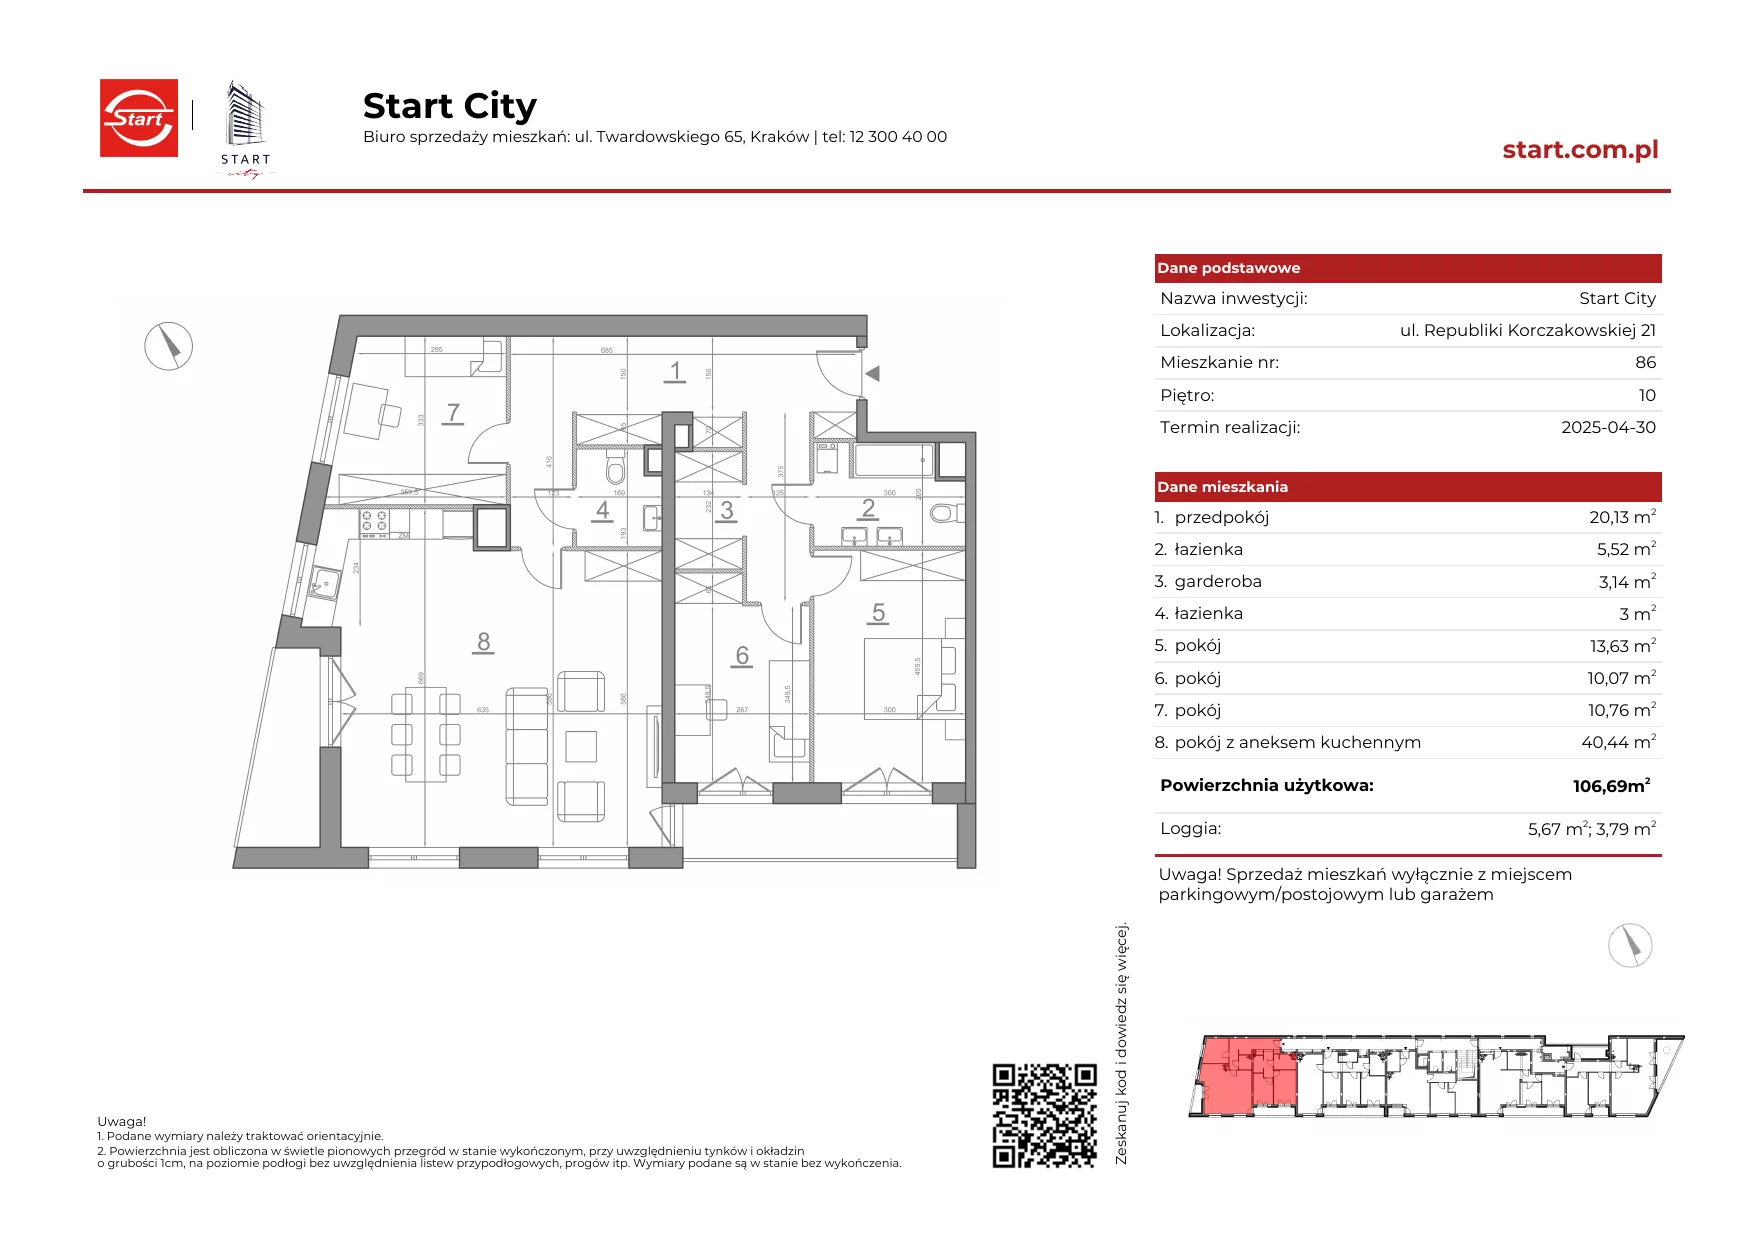 Mieszkanie 106,32 m², piętro 10, oferta nr 21/86, Start City, Kraków, Bieżanów-Prokocim, ul. Republiki Korczakowskiej 21